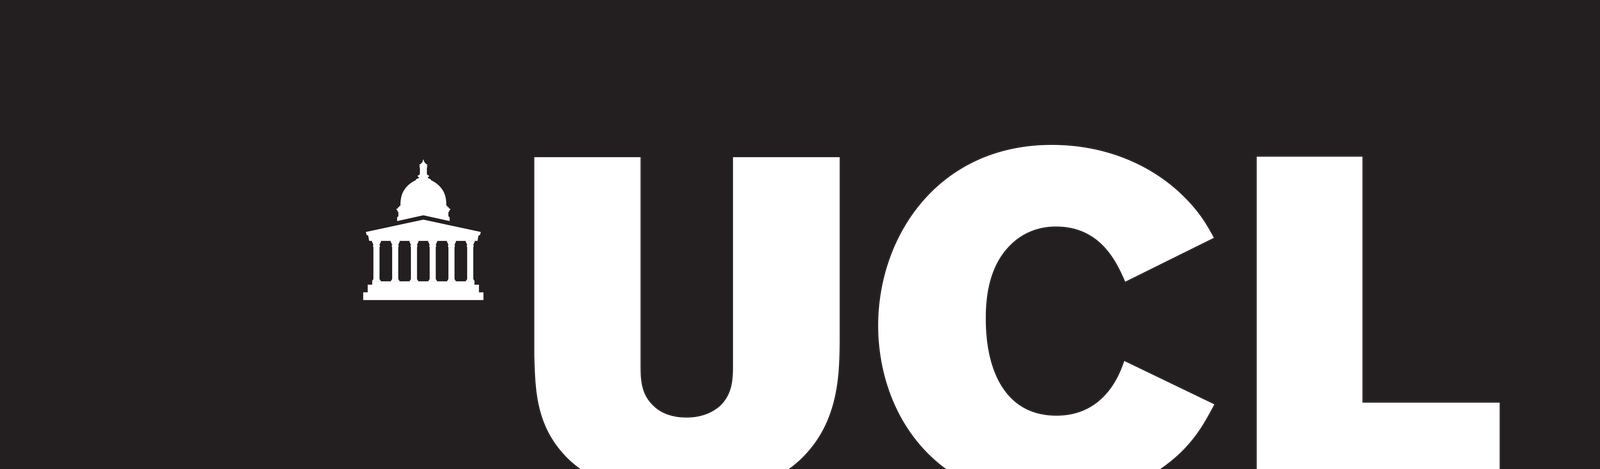 Logo de l'université de Caroline du Nord, Charlotte